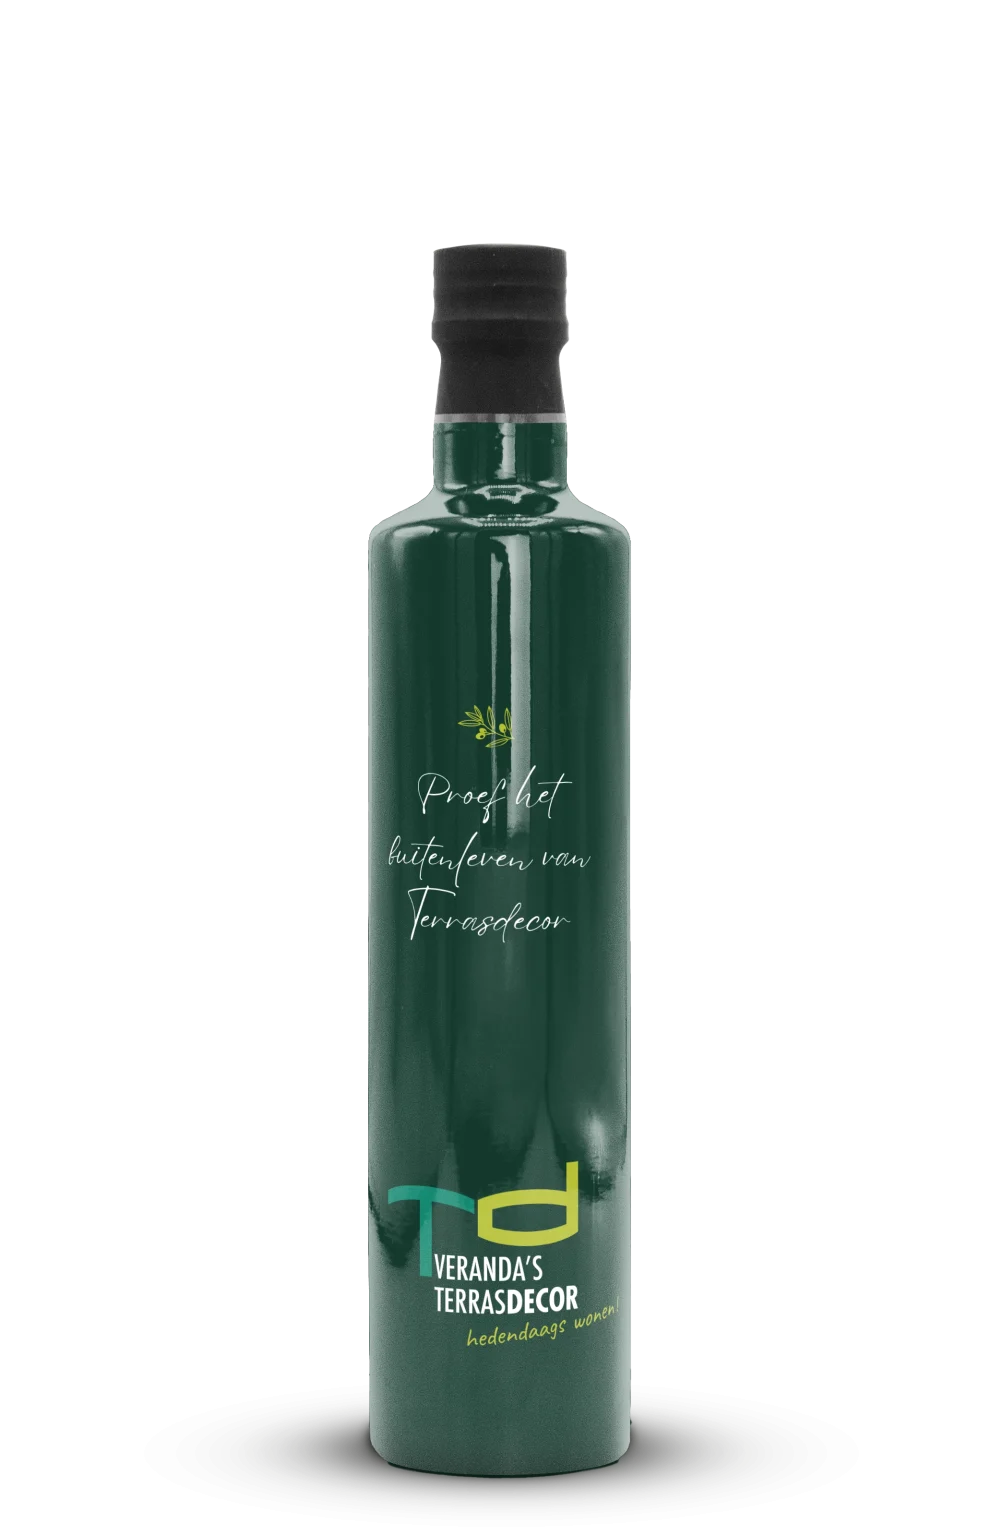 Bedrukte fles olijfolie van Terrasdecor